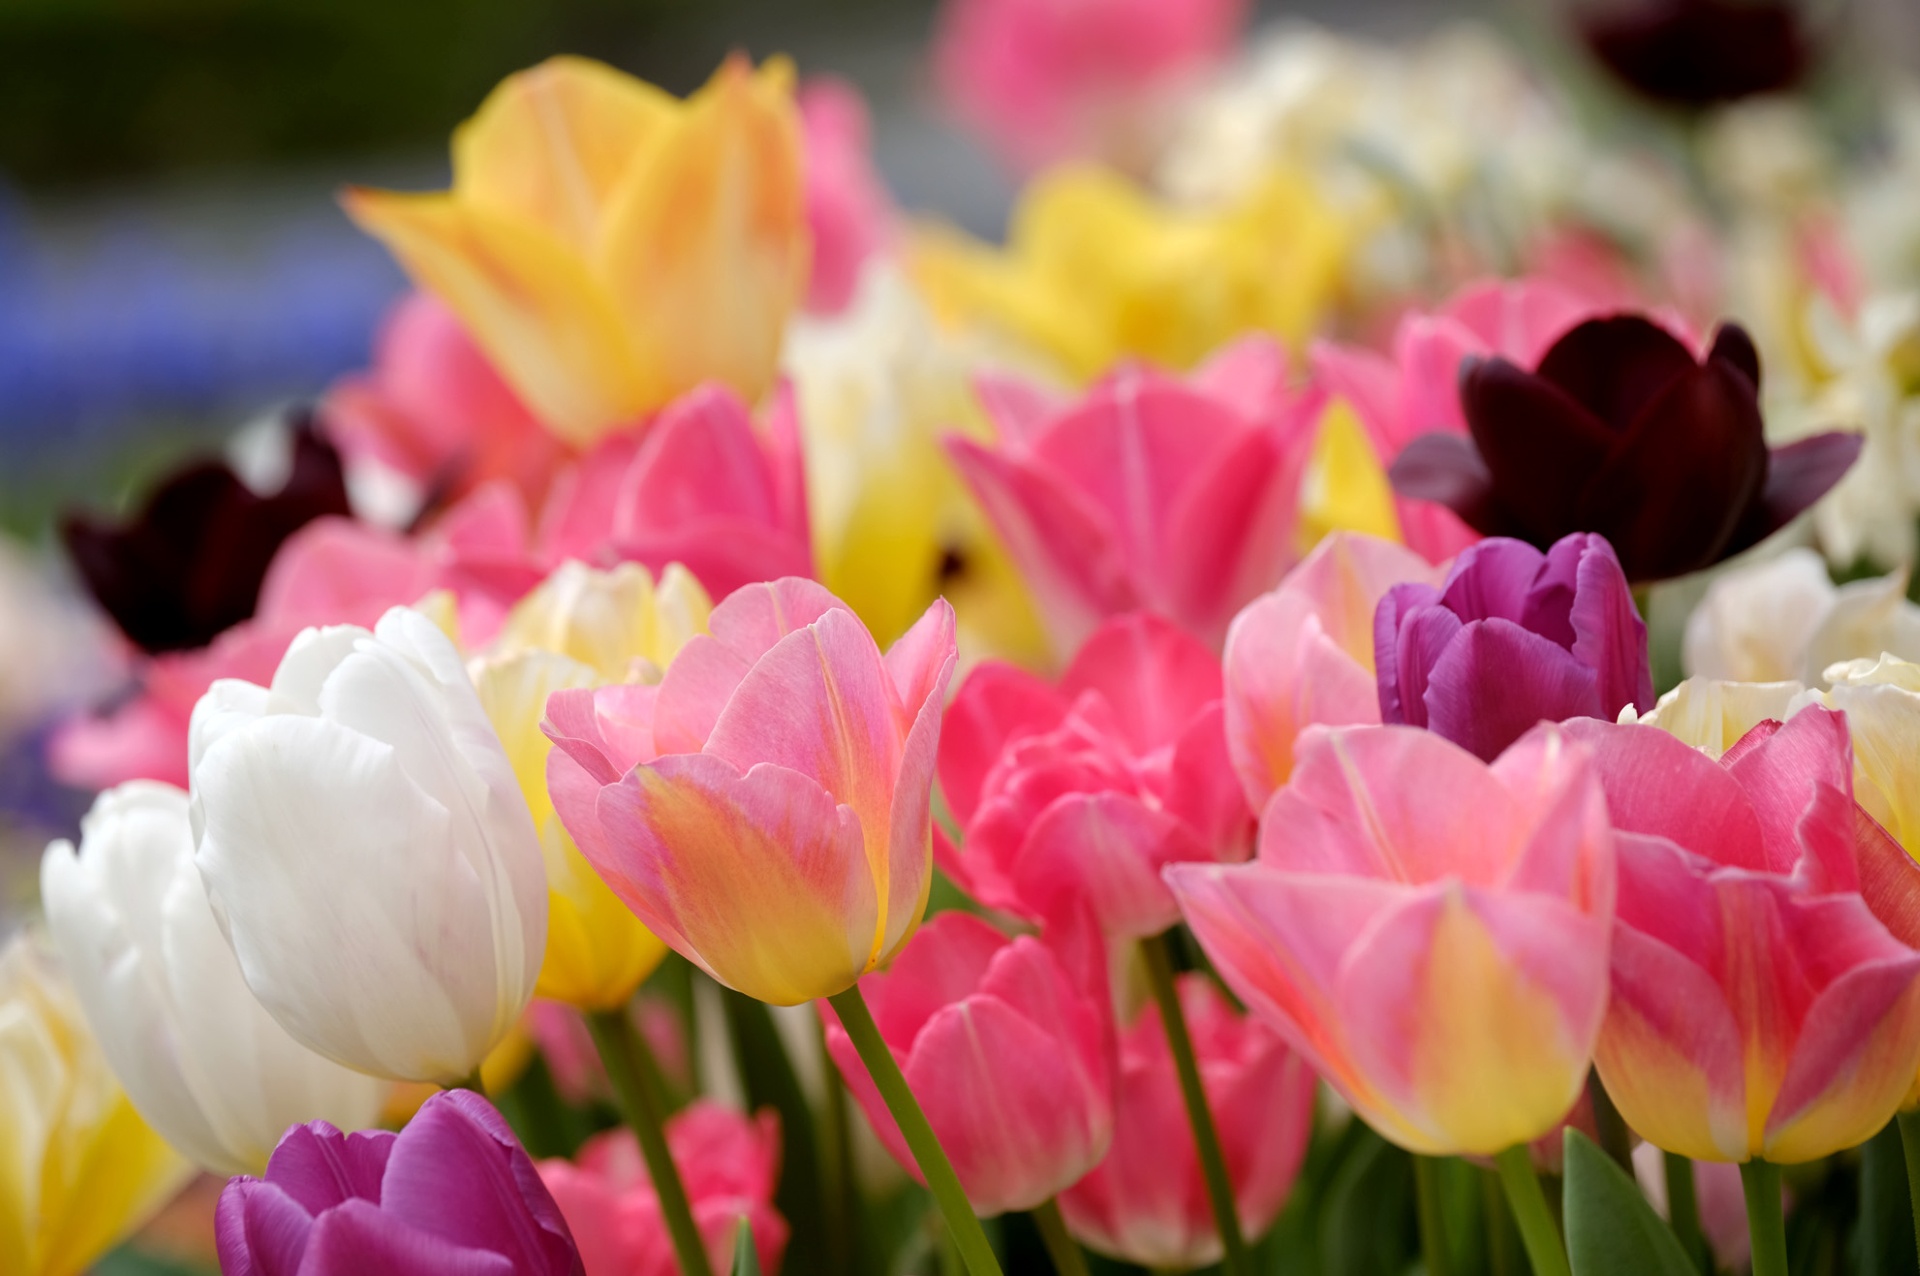 Descarga gratuita de fondo de pantalla para móvil de Naturaleza, Flores, Flor, Flor Rosa, Tulipán, Flor Amarilla, Flor Blanca, Tierra/naturaleza.